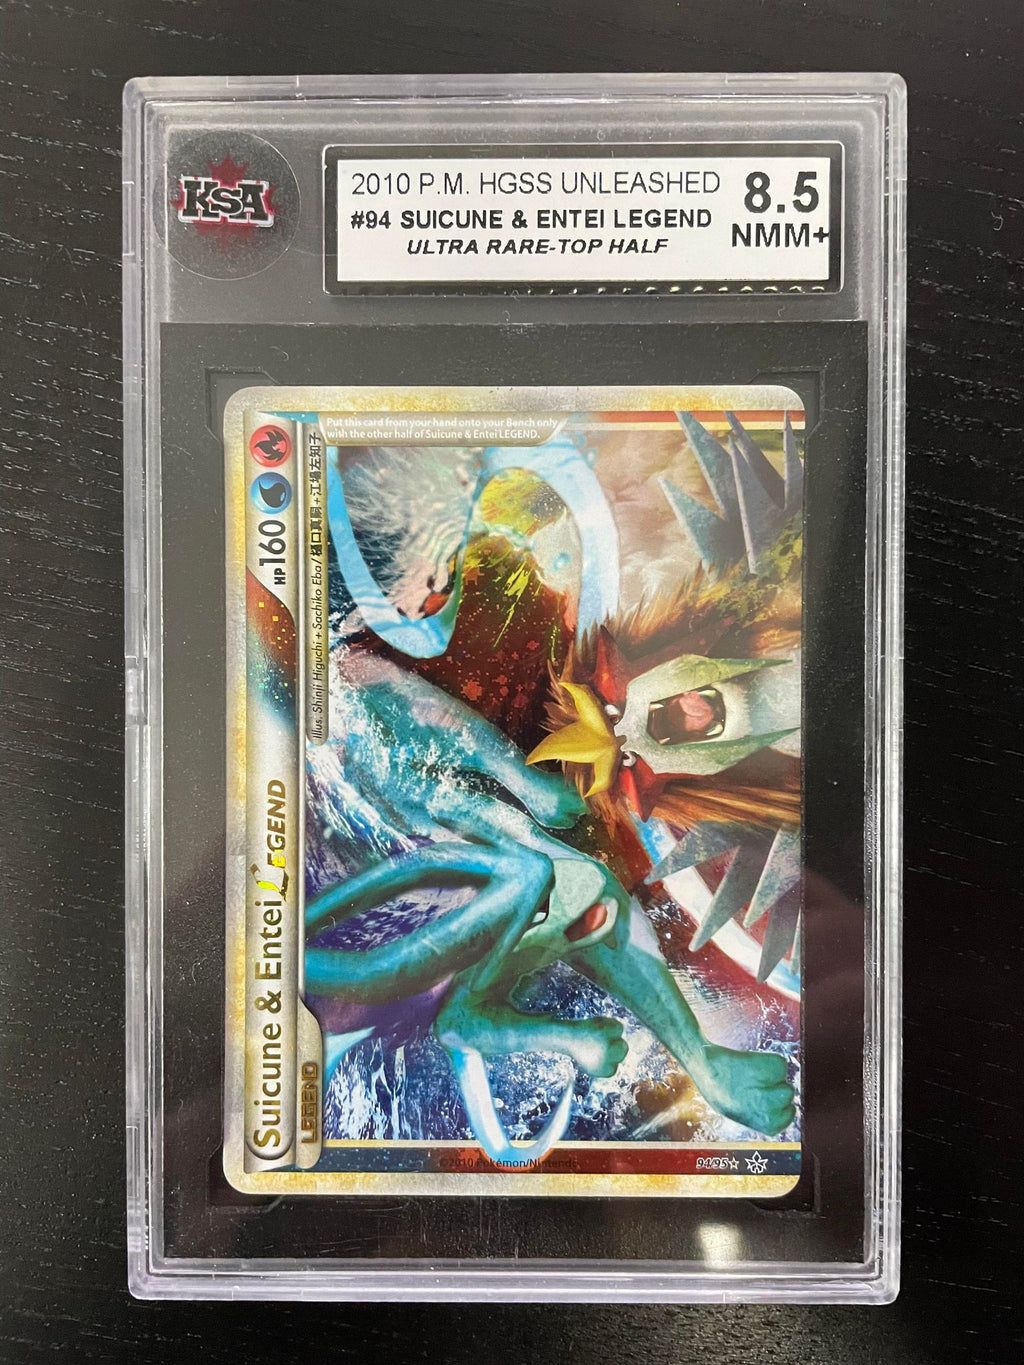 Pokémon Card Database - Dragon Majesty - #78 Ultra Necrozma GX